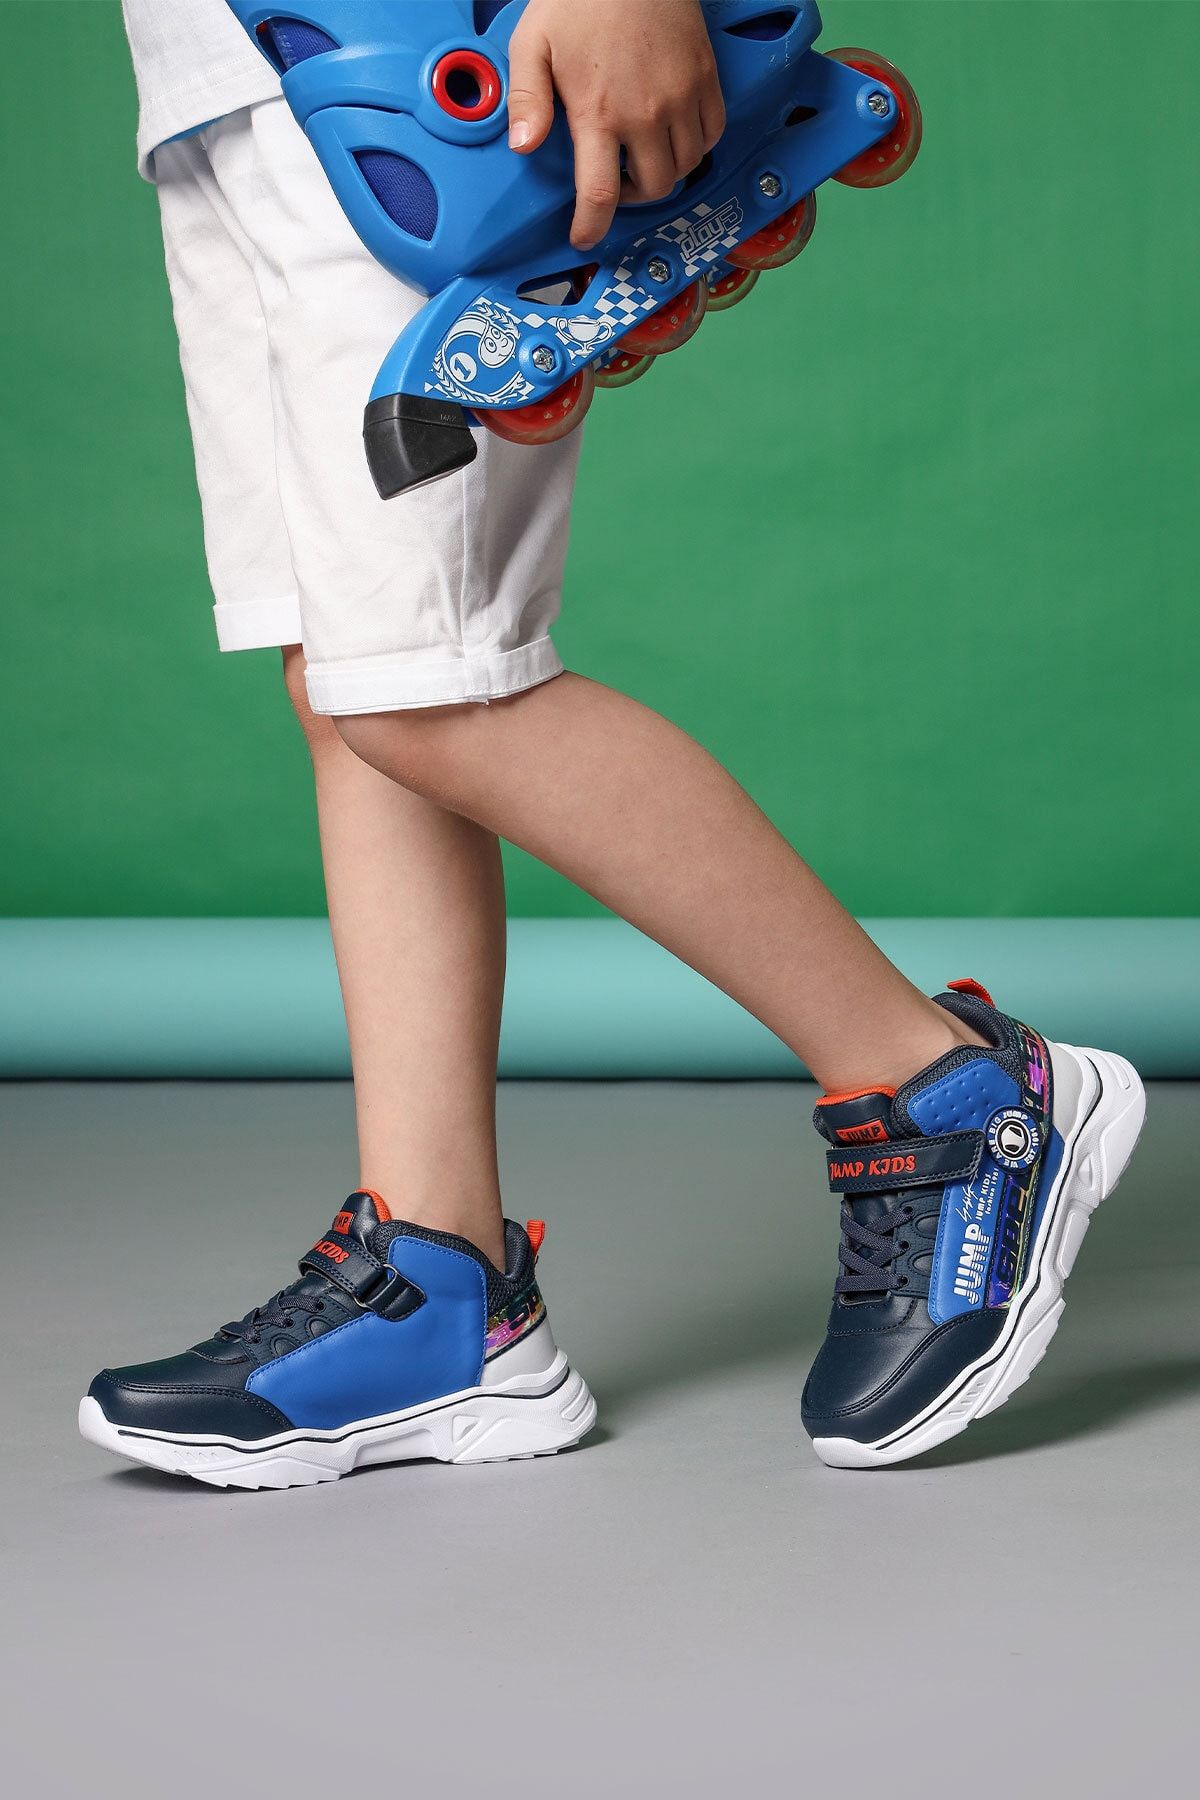 Jump 25792 Lacivert Royal Mavi Turuncu Çocuk Günlük Rahat Yürüyüş Sneaker Spor Ayakkabı